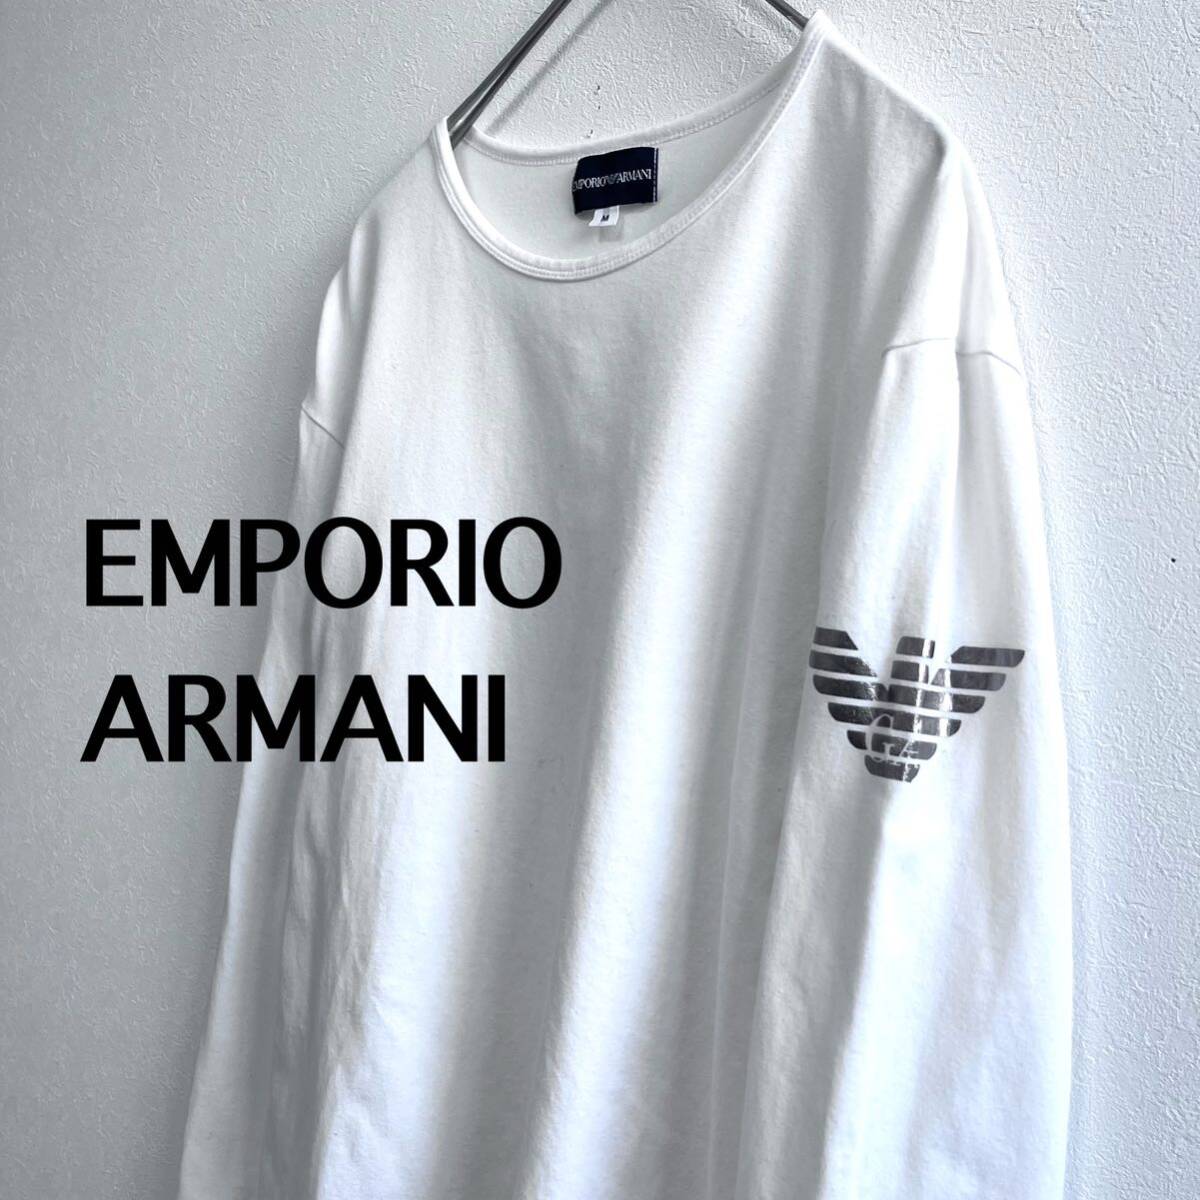 エンポリオアルマーニ EMPORIO ARMANI カットソー ロンT 長袖 Tシャツ ホワイト M メンズ アルマーニの画像1